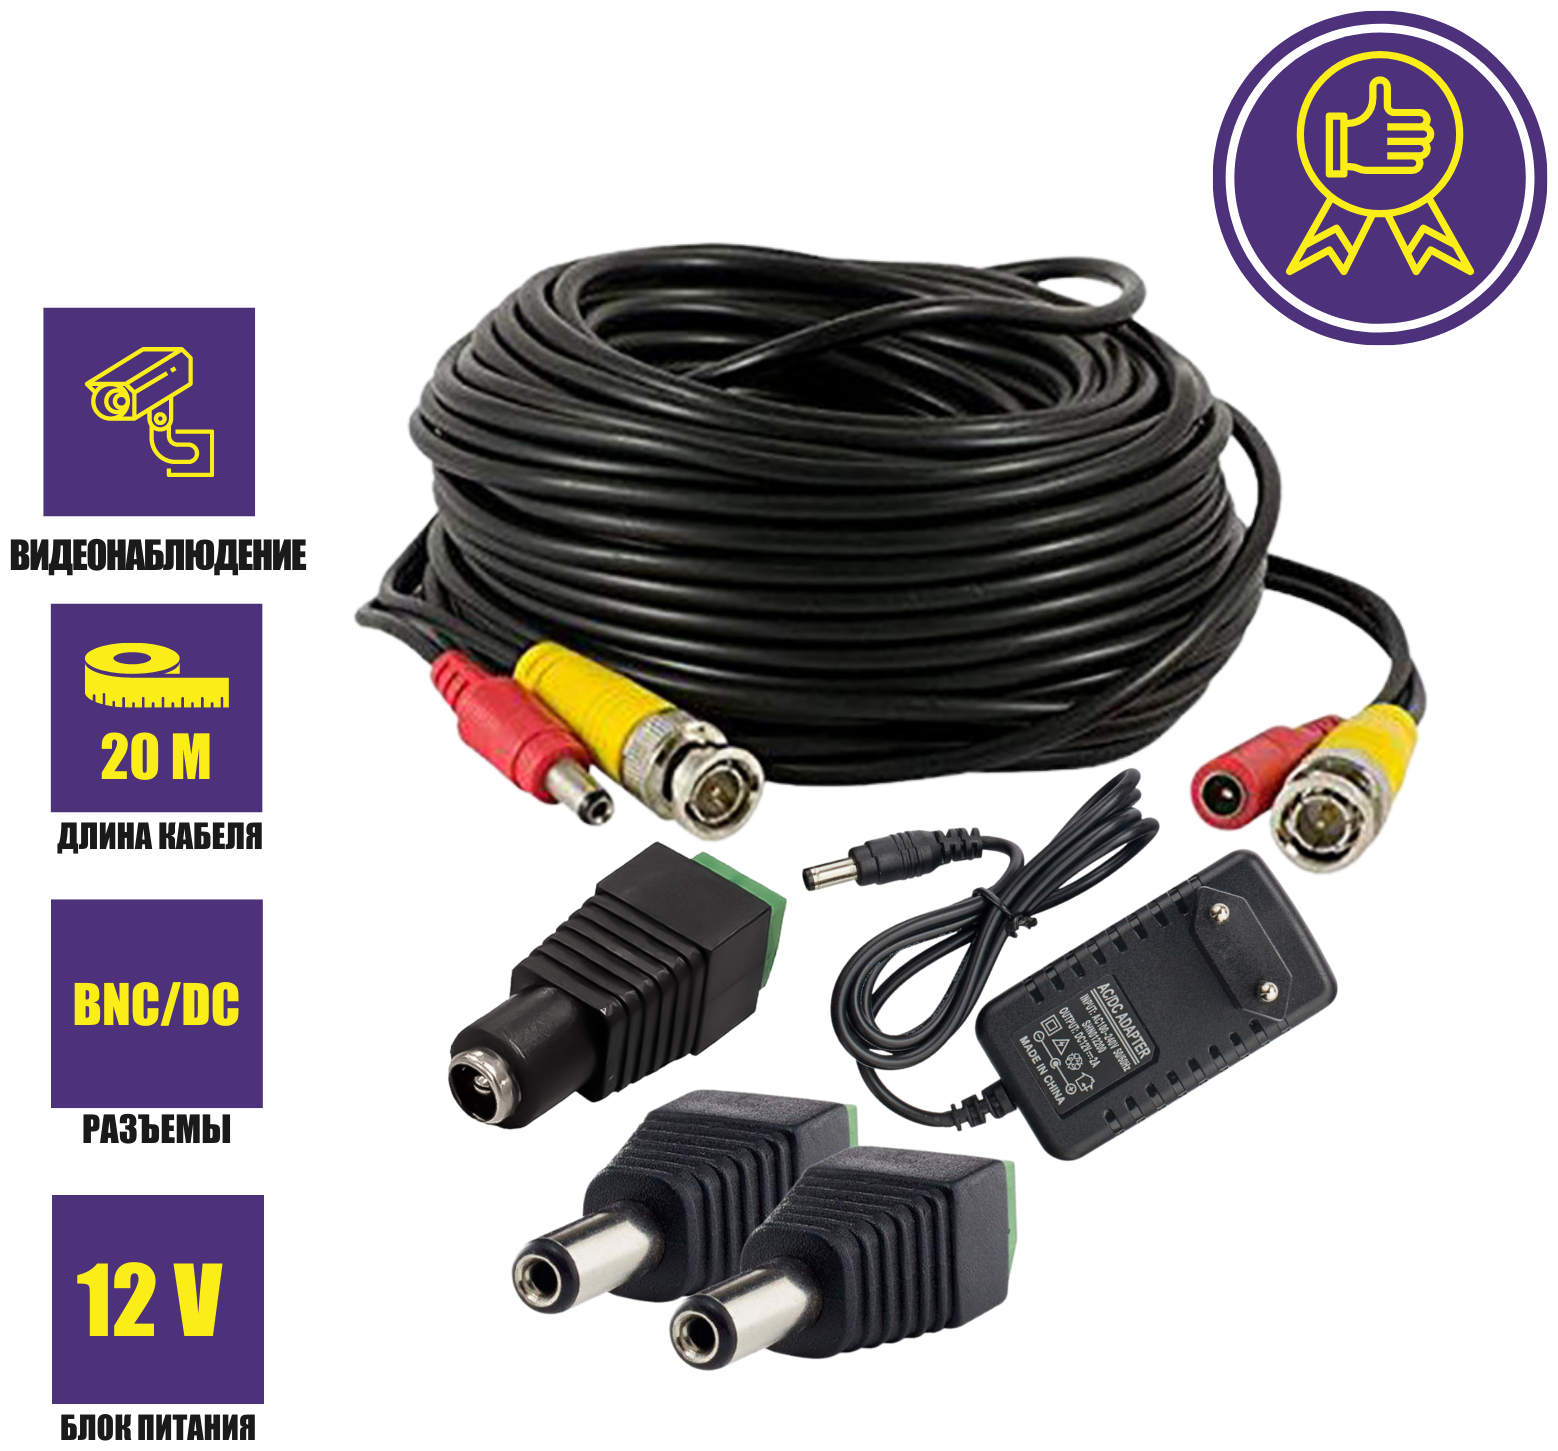 Комплект К-20.2 для системы видеонаблюдения: кабель BNC/DC 20 м переходники DC(мама) DC(папа) и блок питания